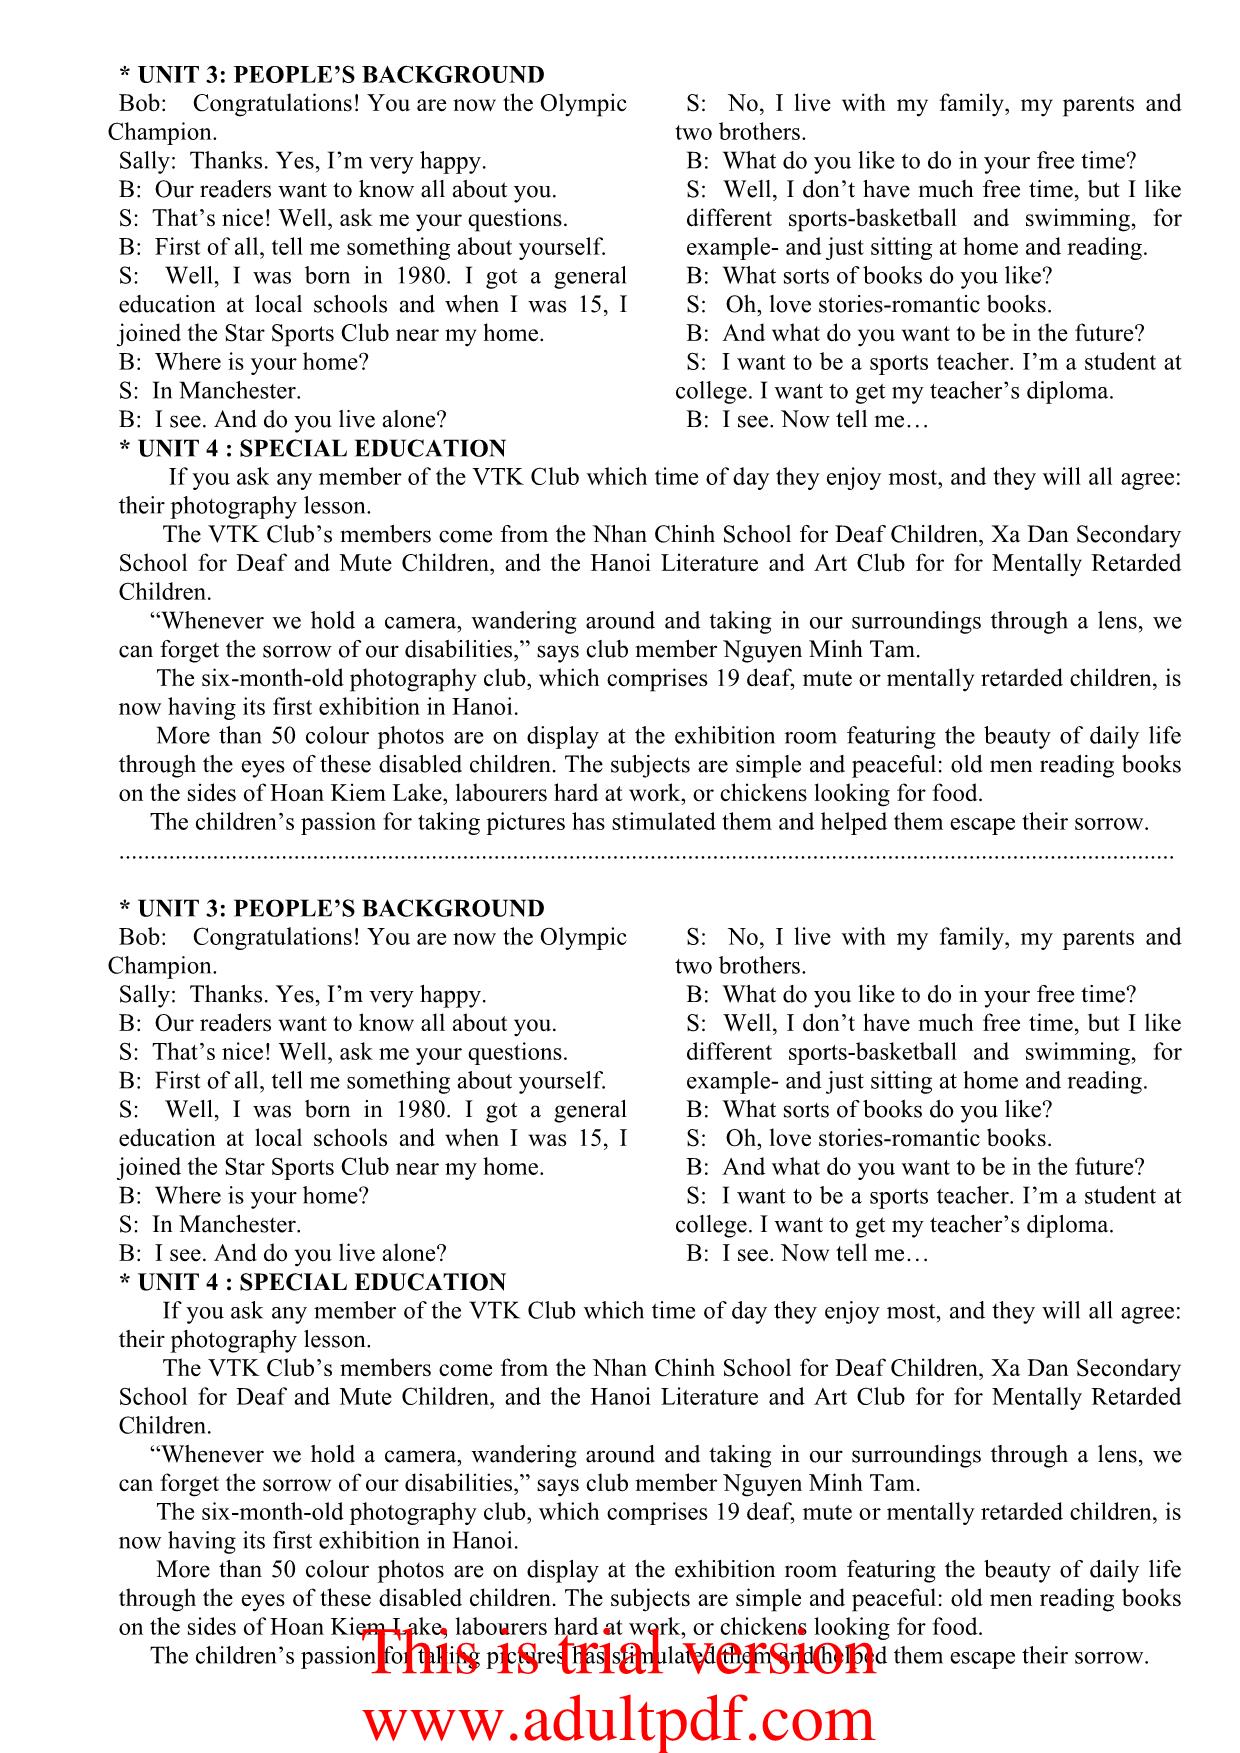 Tiếng Anh - Tapescripts 10 trang 6